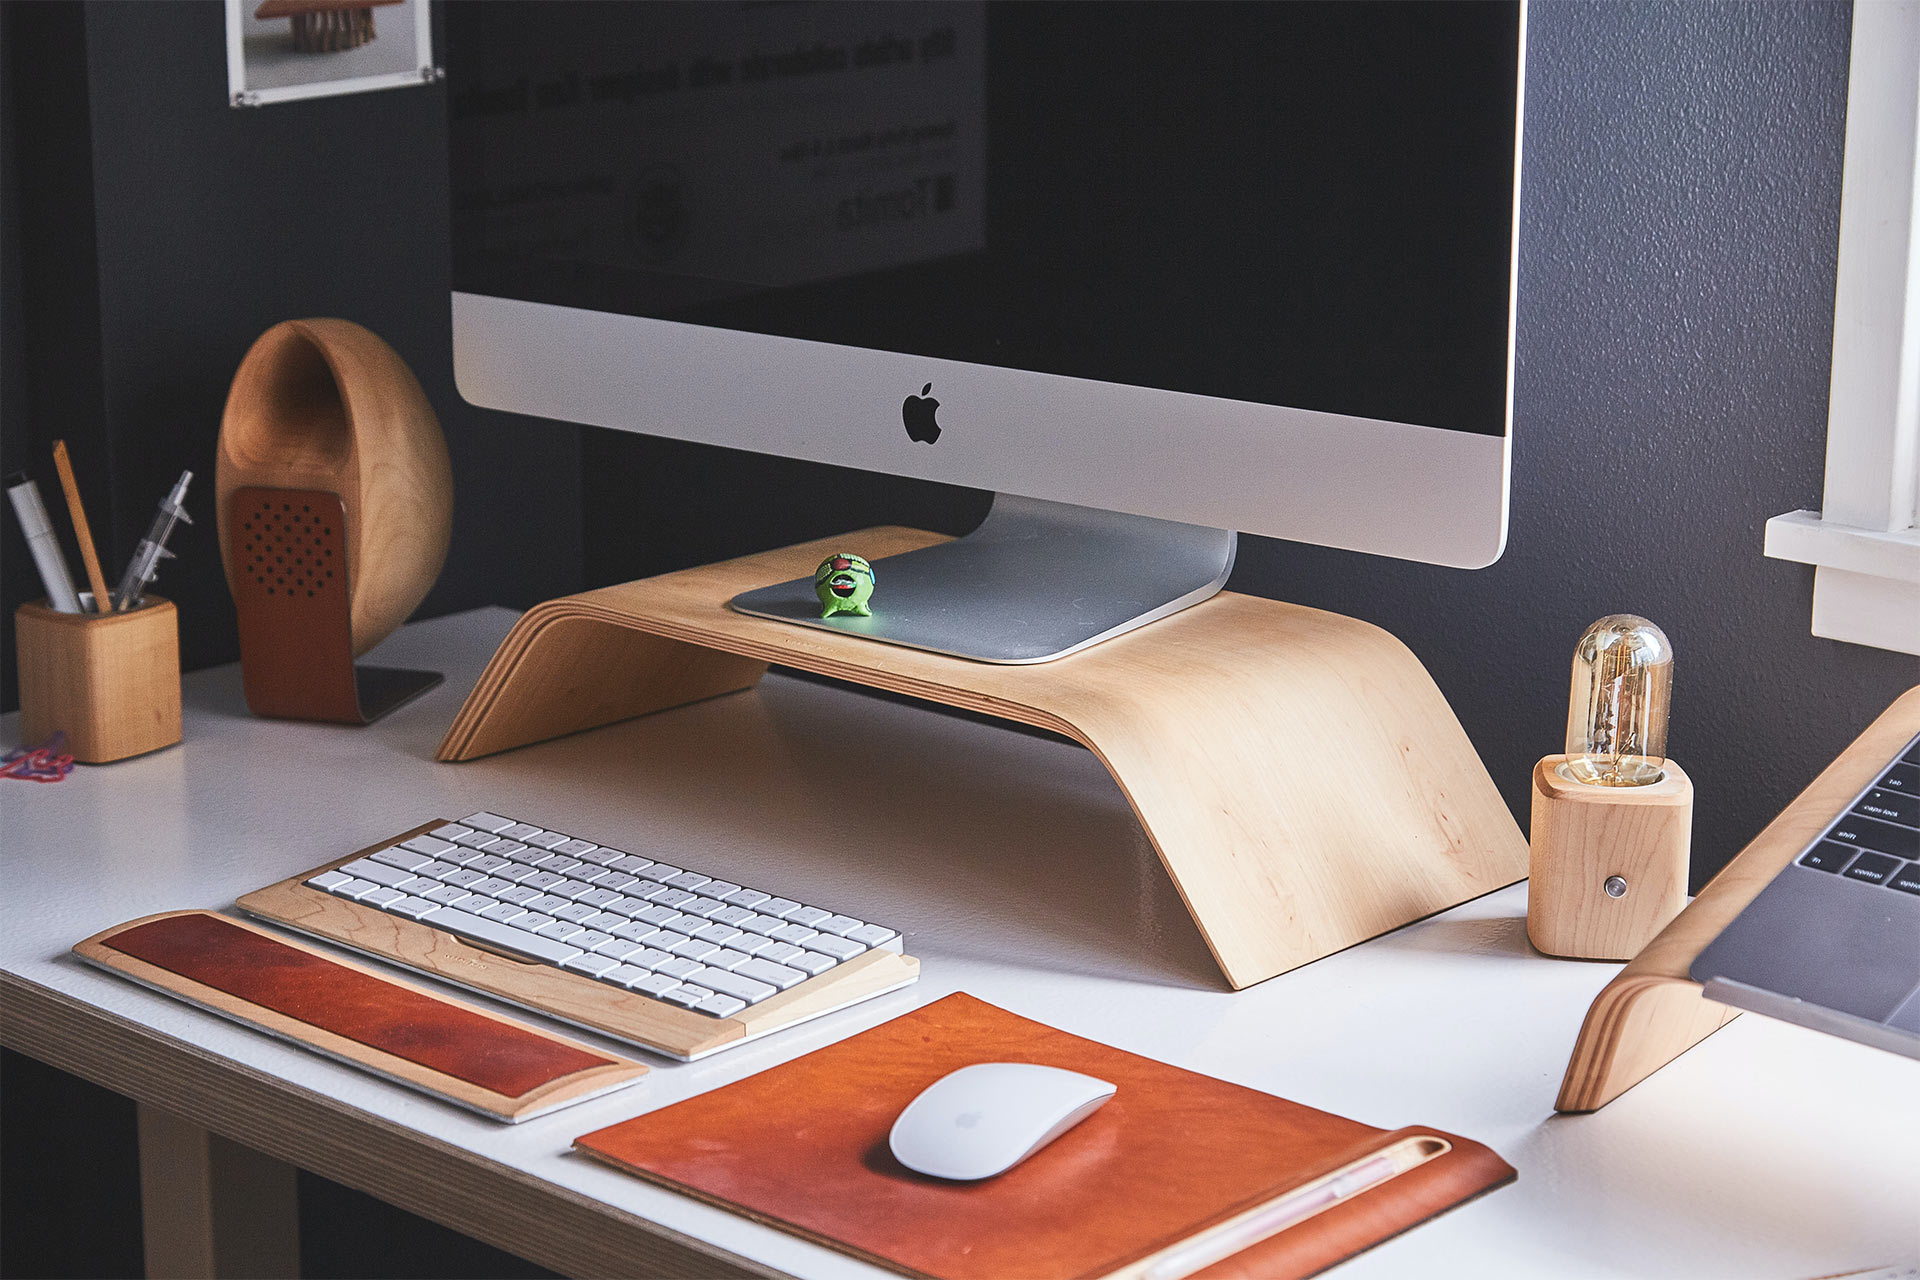 桌子上有一台 iMac 放在木质支架上，还有无线键盘和鼠标。